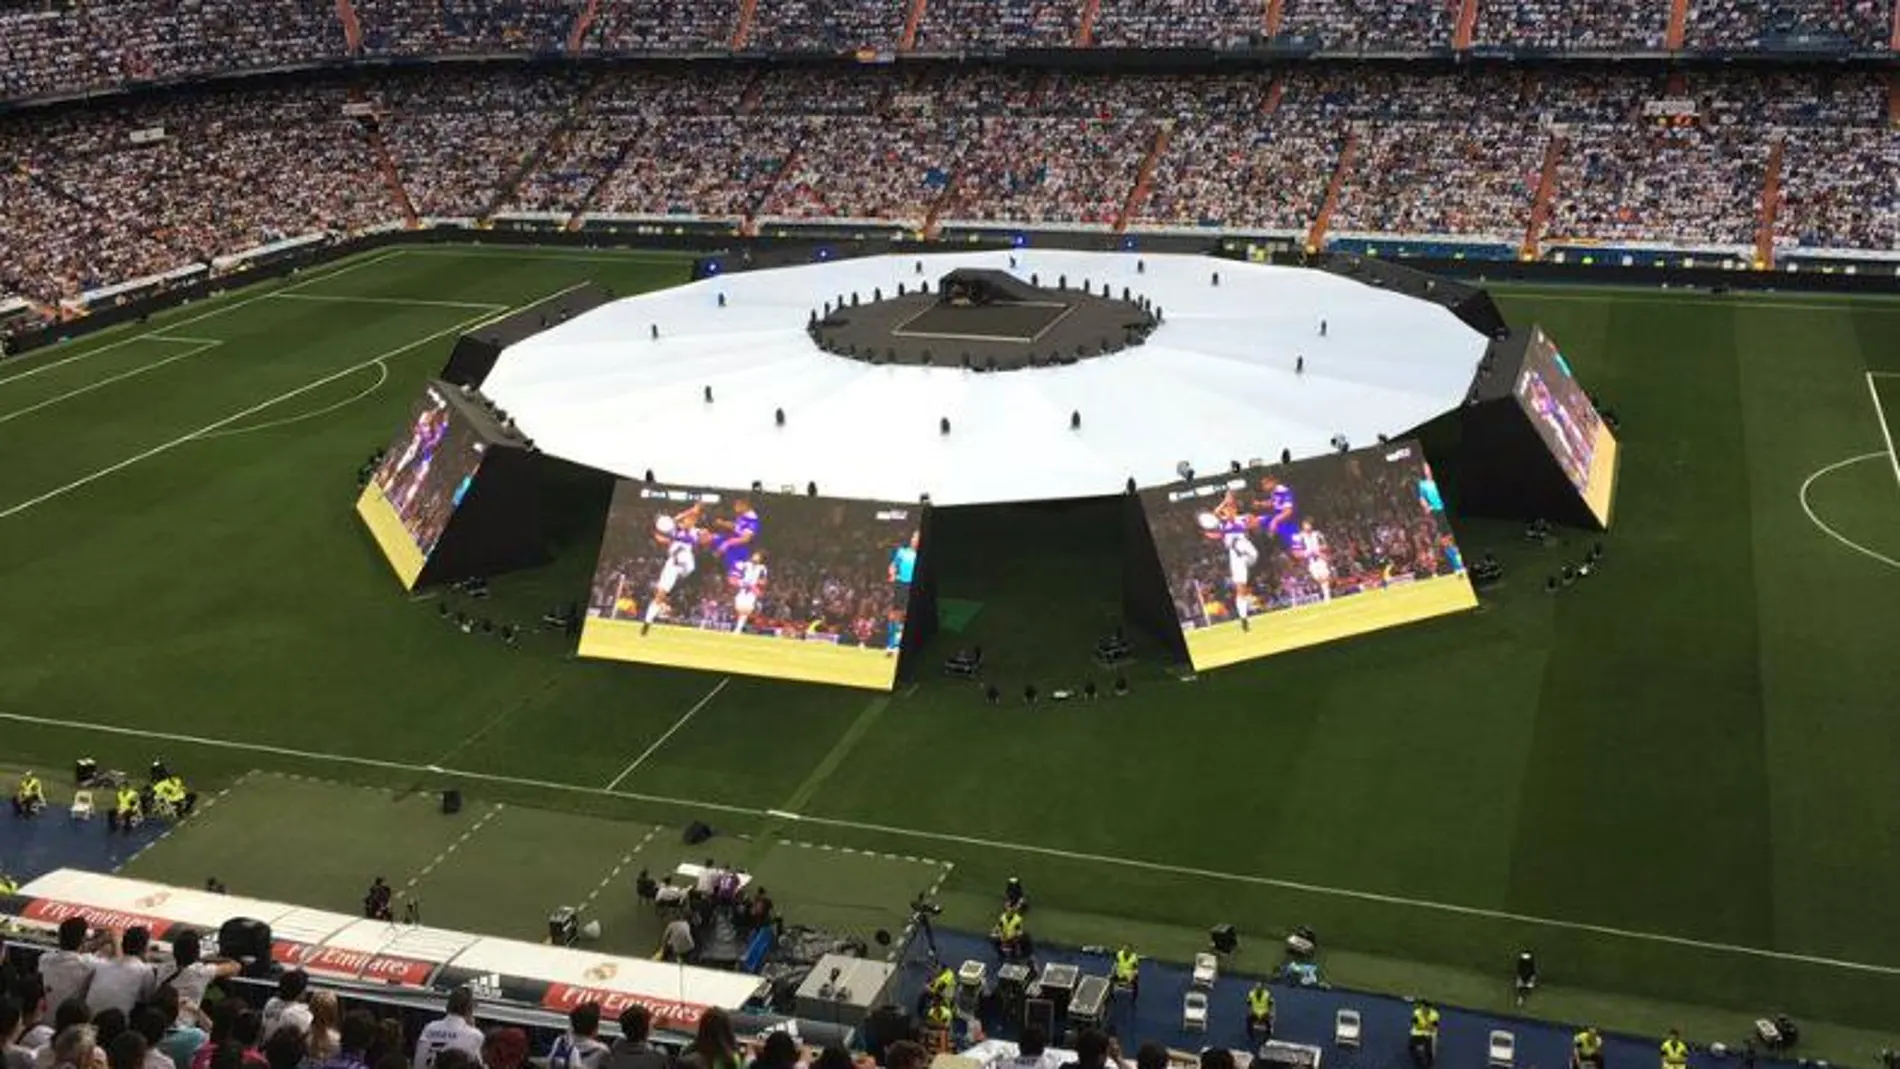 El club instalará pantallas gigantes en el centro del campo orientada a cada una de las gradas